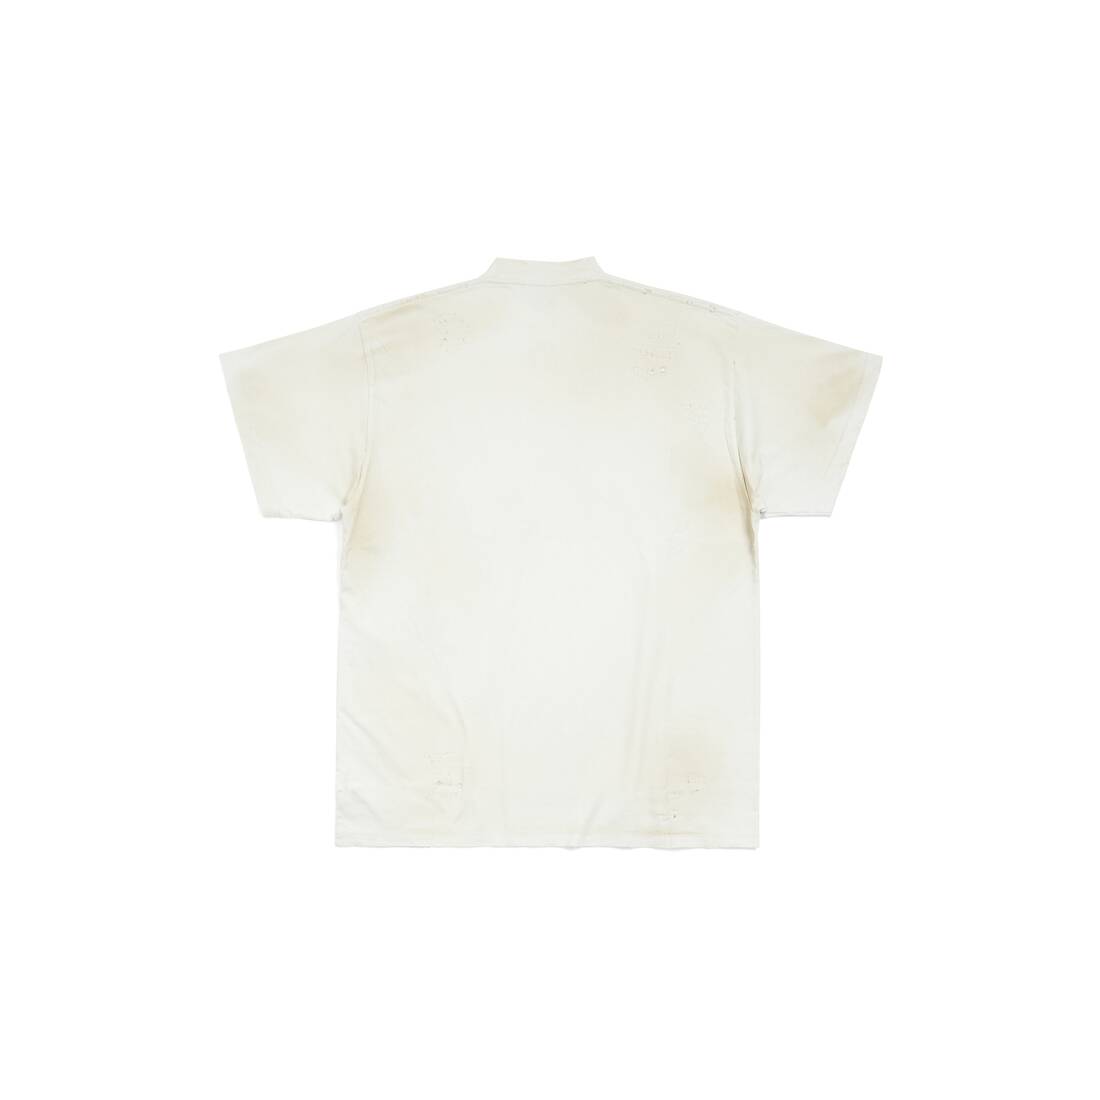 Fonkeling Onbevredigend Hoeveelheid geld Skater T-shirt Oversized in White | Balenciaga US